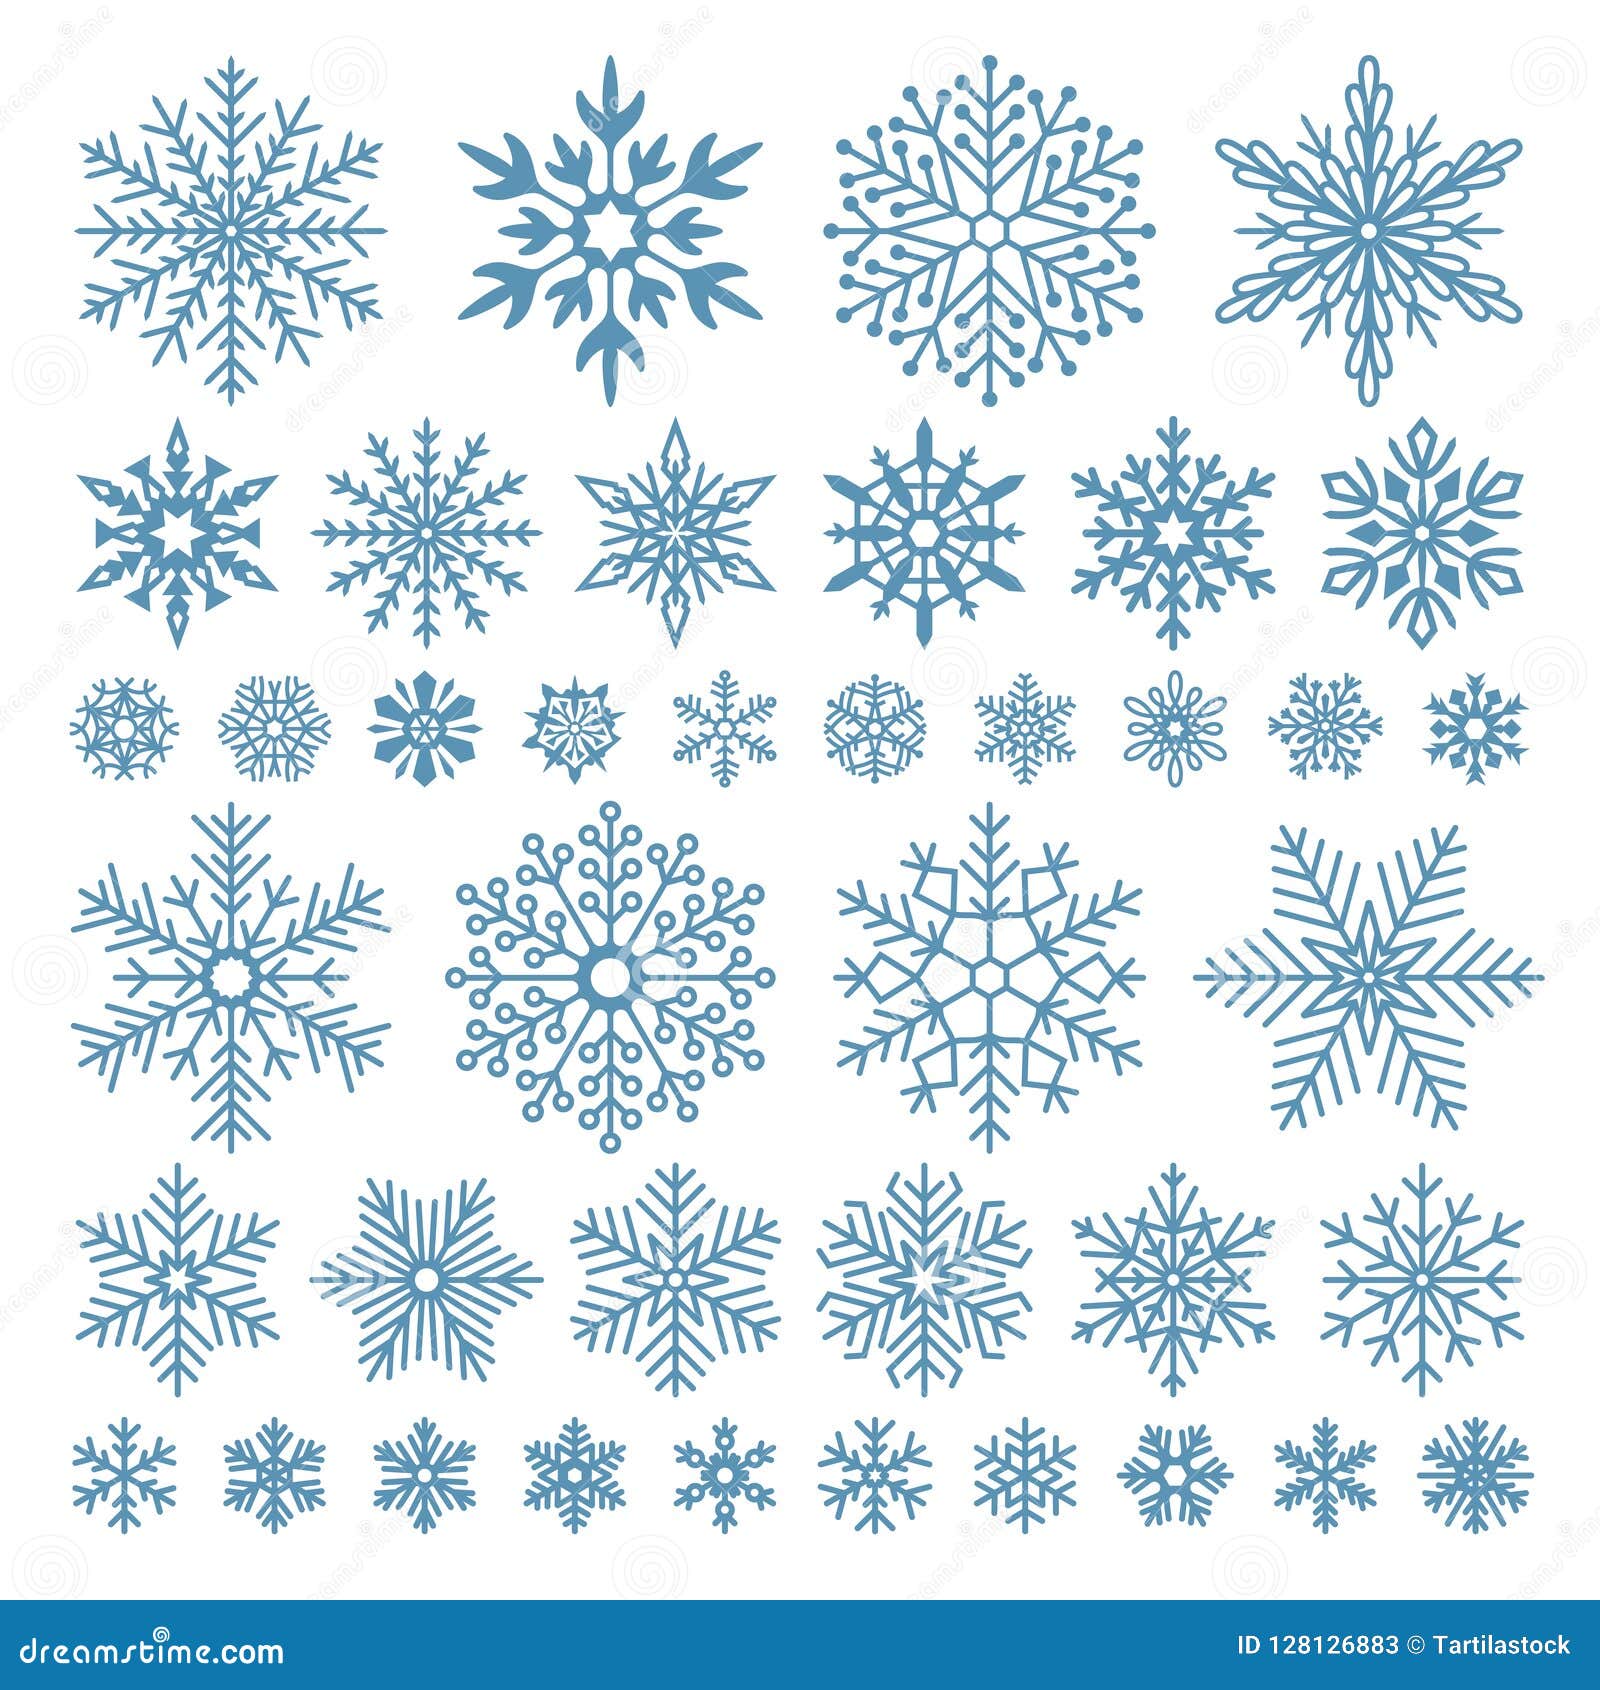 Simple Snowflake Stock Illustrations – 56,119 Simple Snowflake